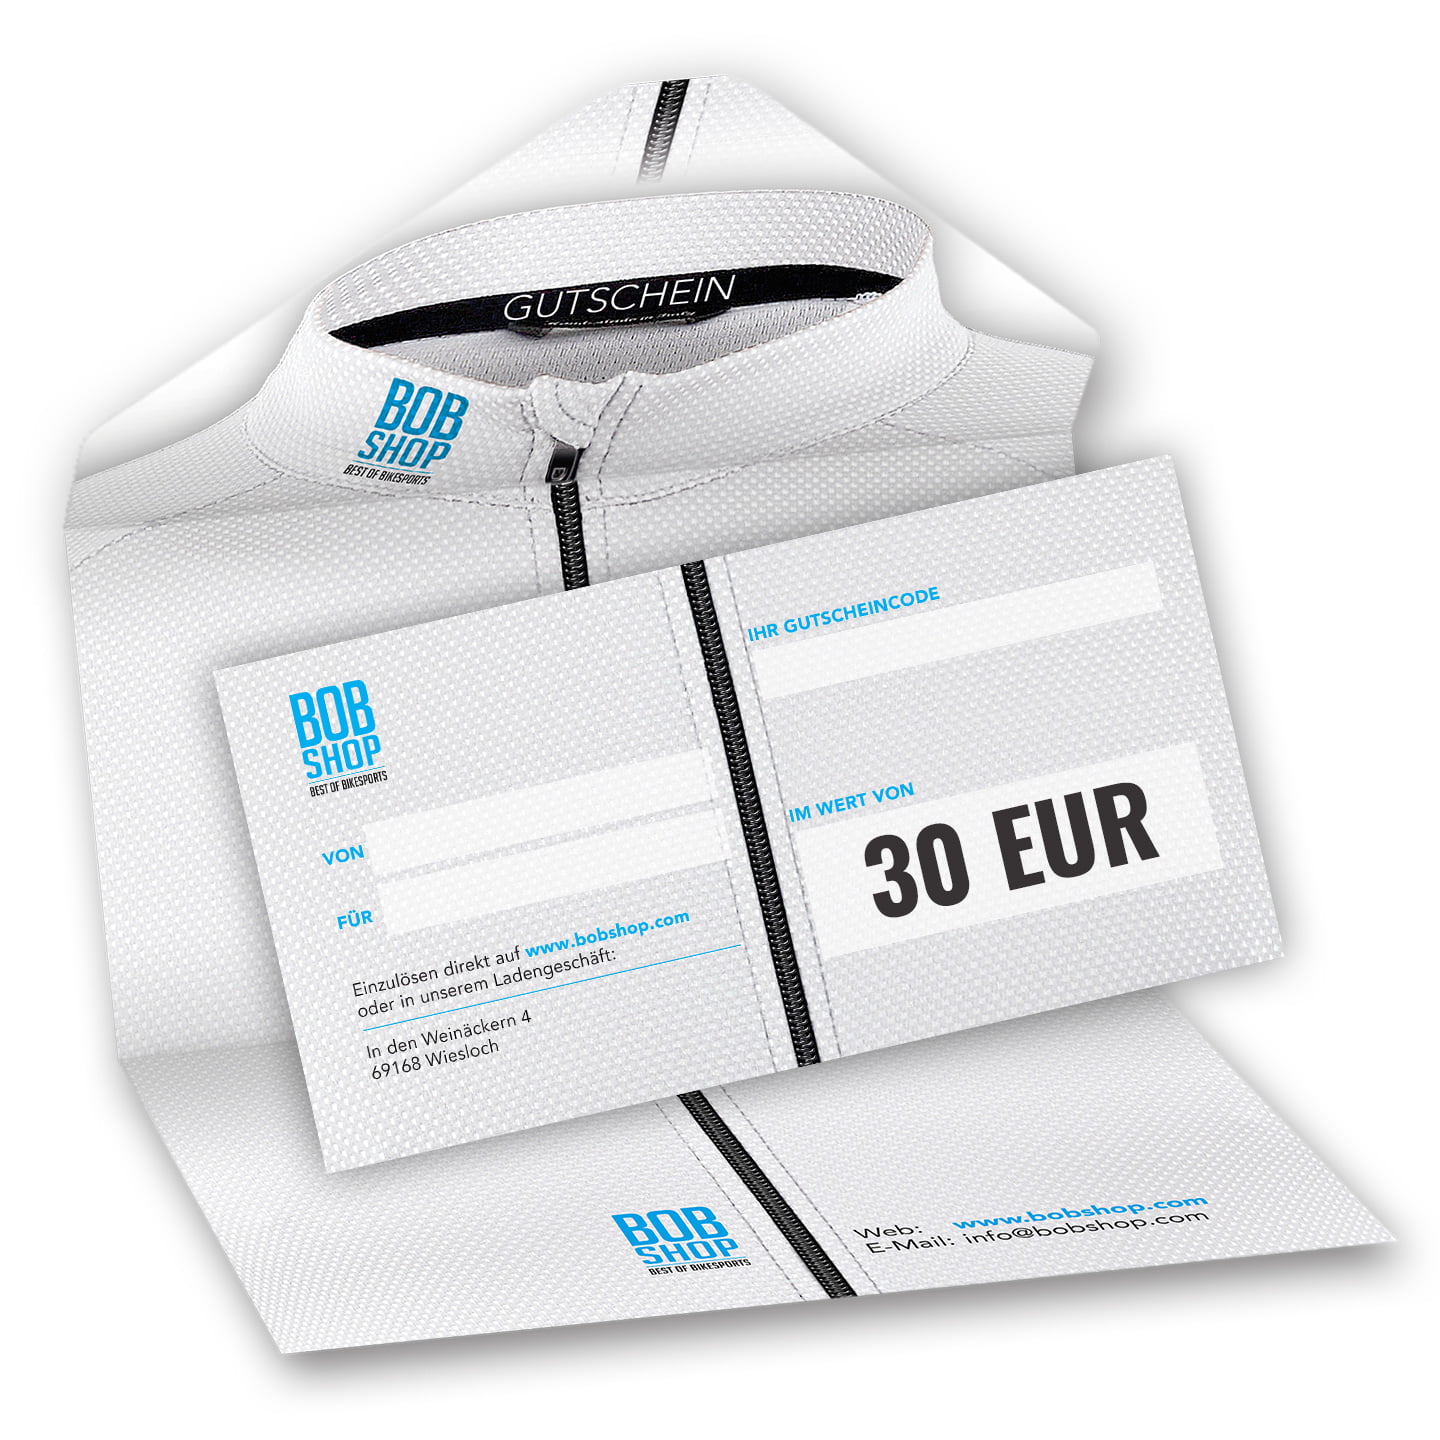 Photo Chèque-cadeau 30 EUR